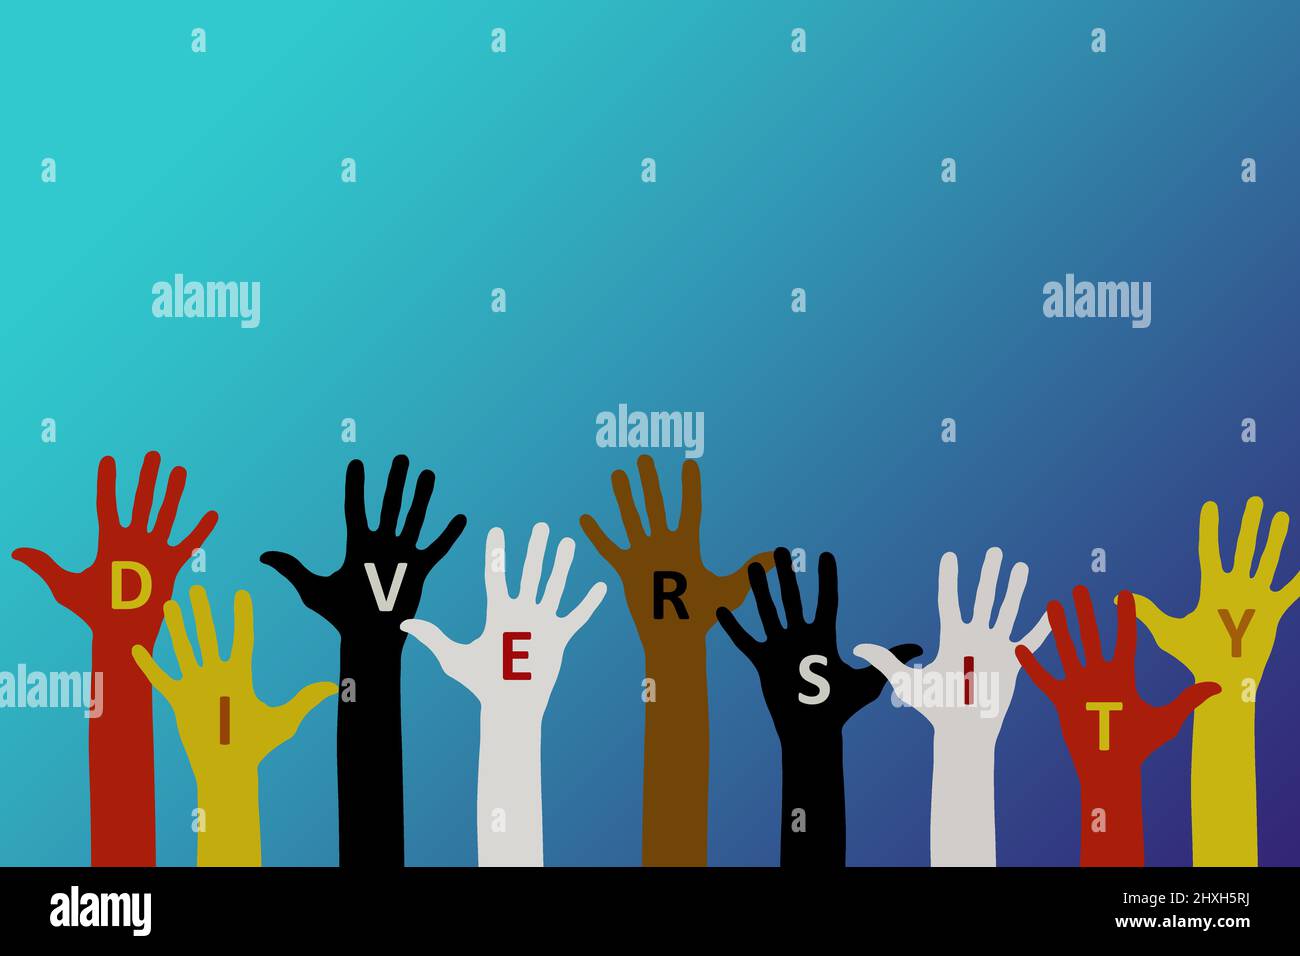 Concepto de diversidad. Alzó las manos de personas de varios colores de piel/raza/origen con inscripción 'universal'. Foto de stock